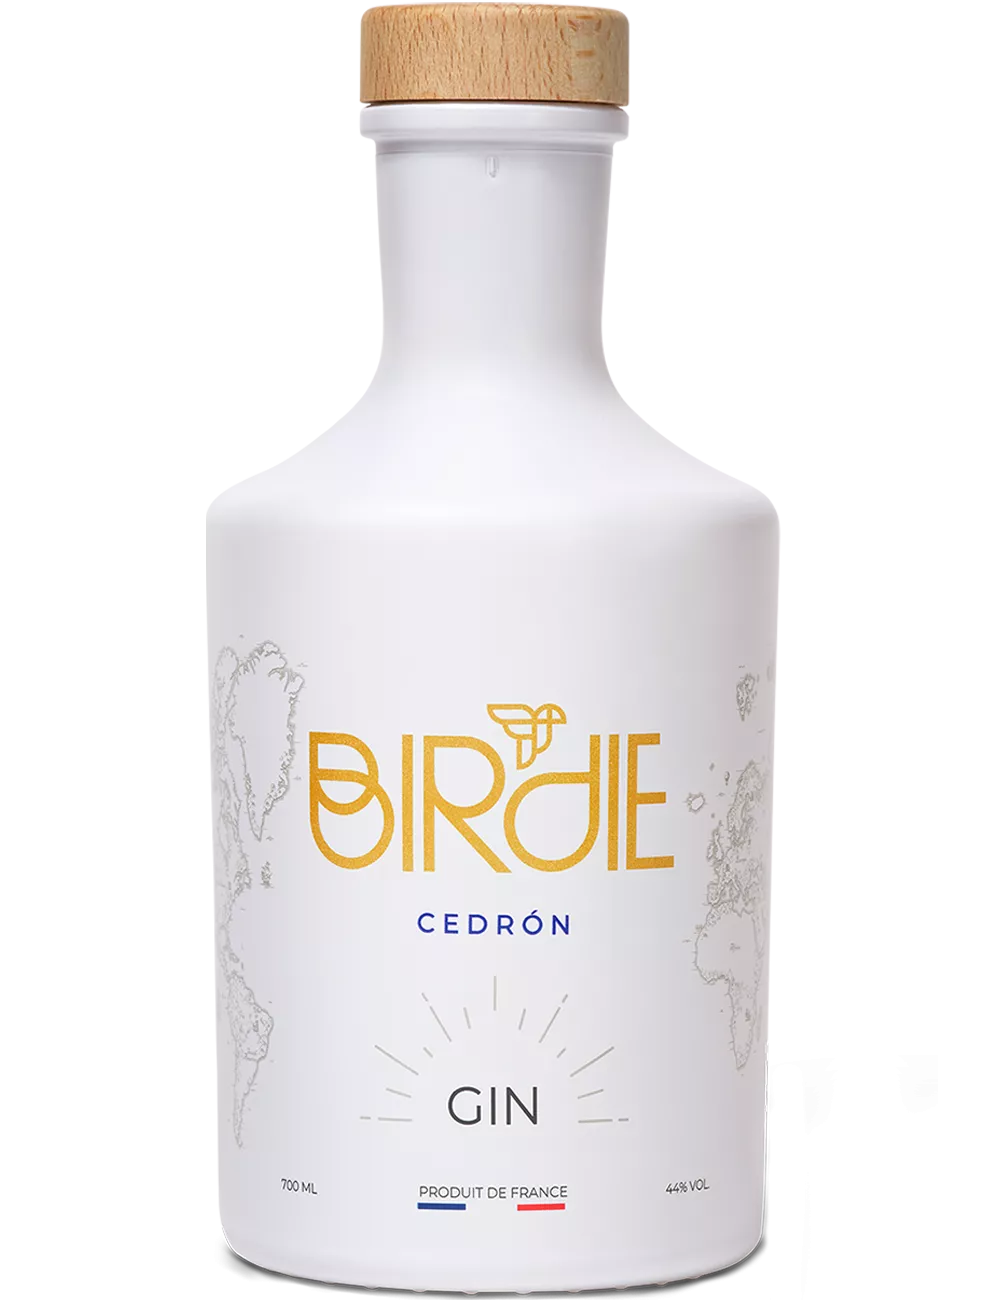 Birdie - Cedron - Gin